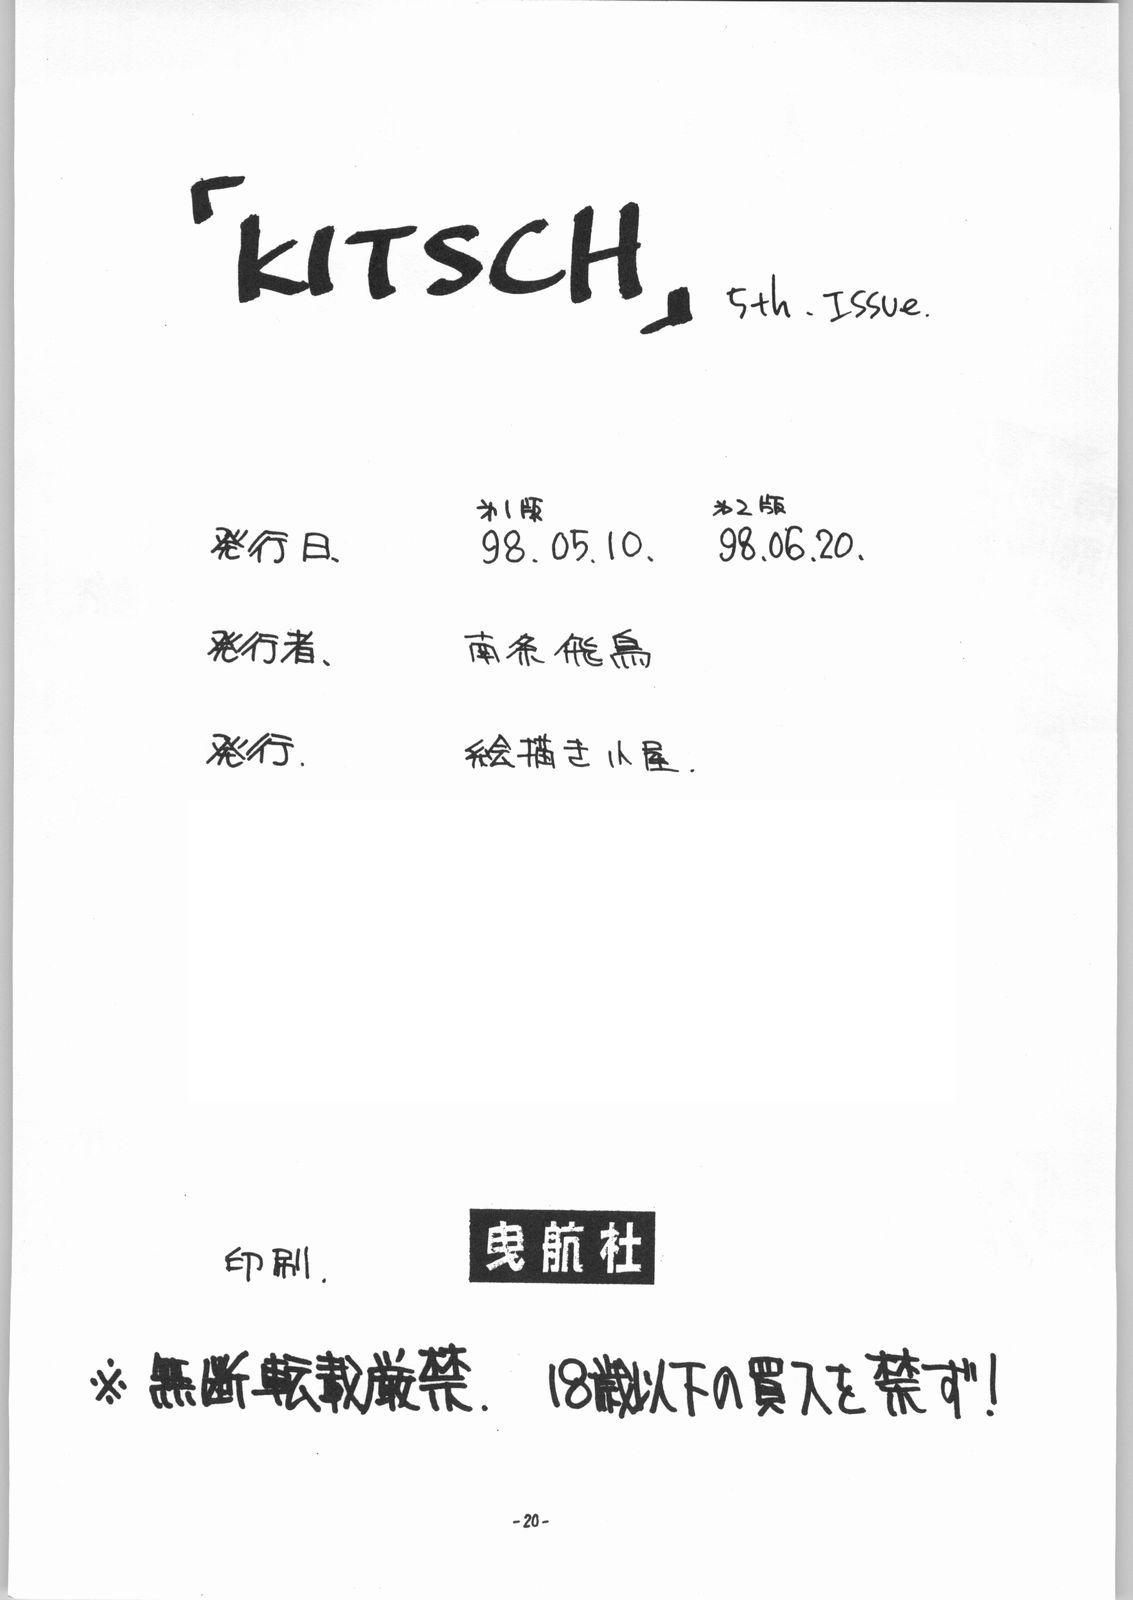 (CR23) [Ekakigoya Notesystem (Nanjou Asuka) Kitsch 5th Issue (Sakura Taisen) 20